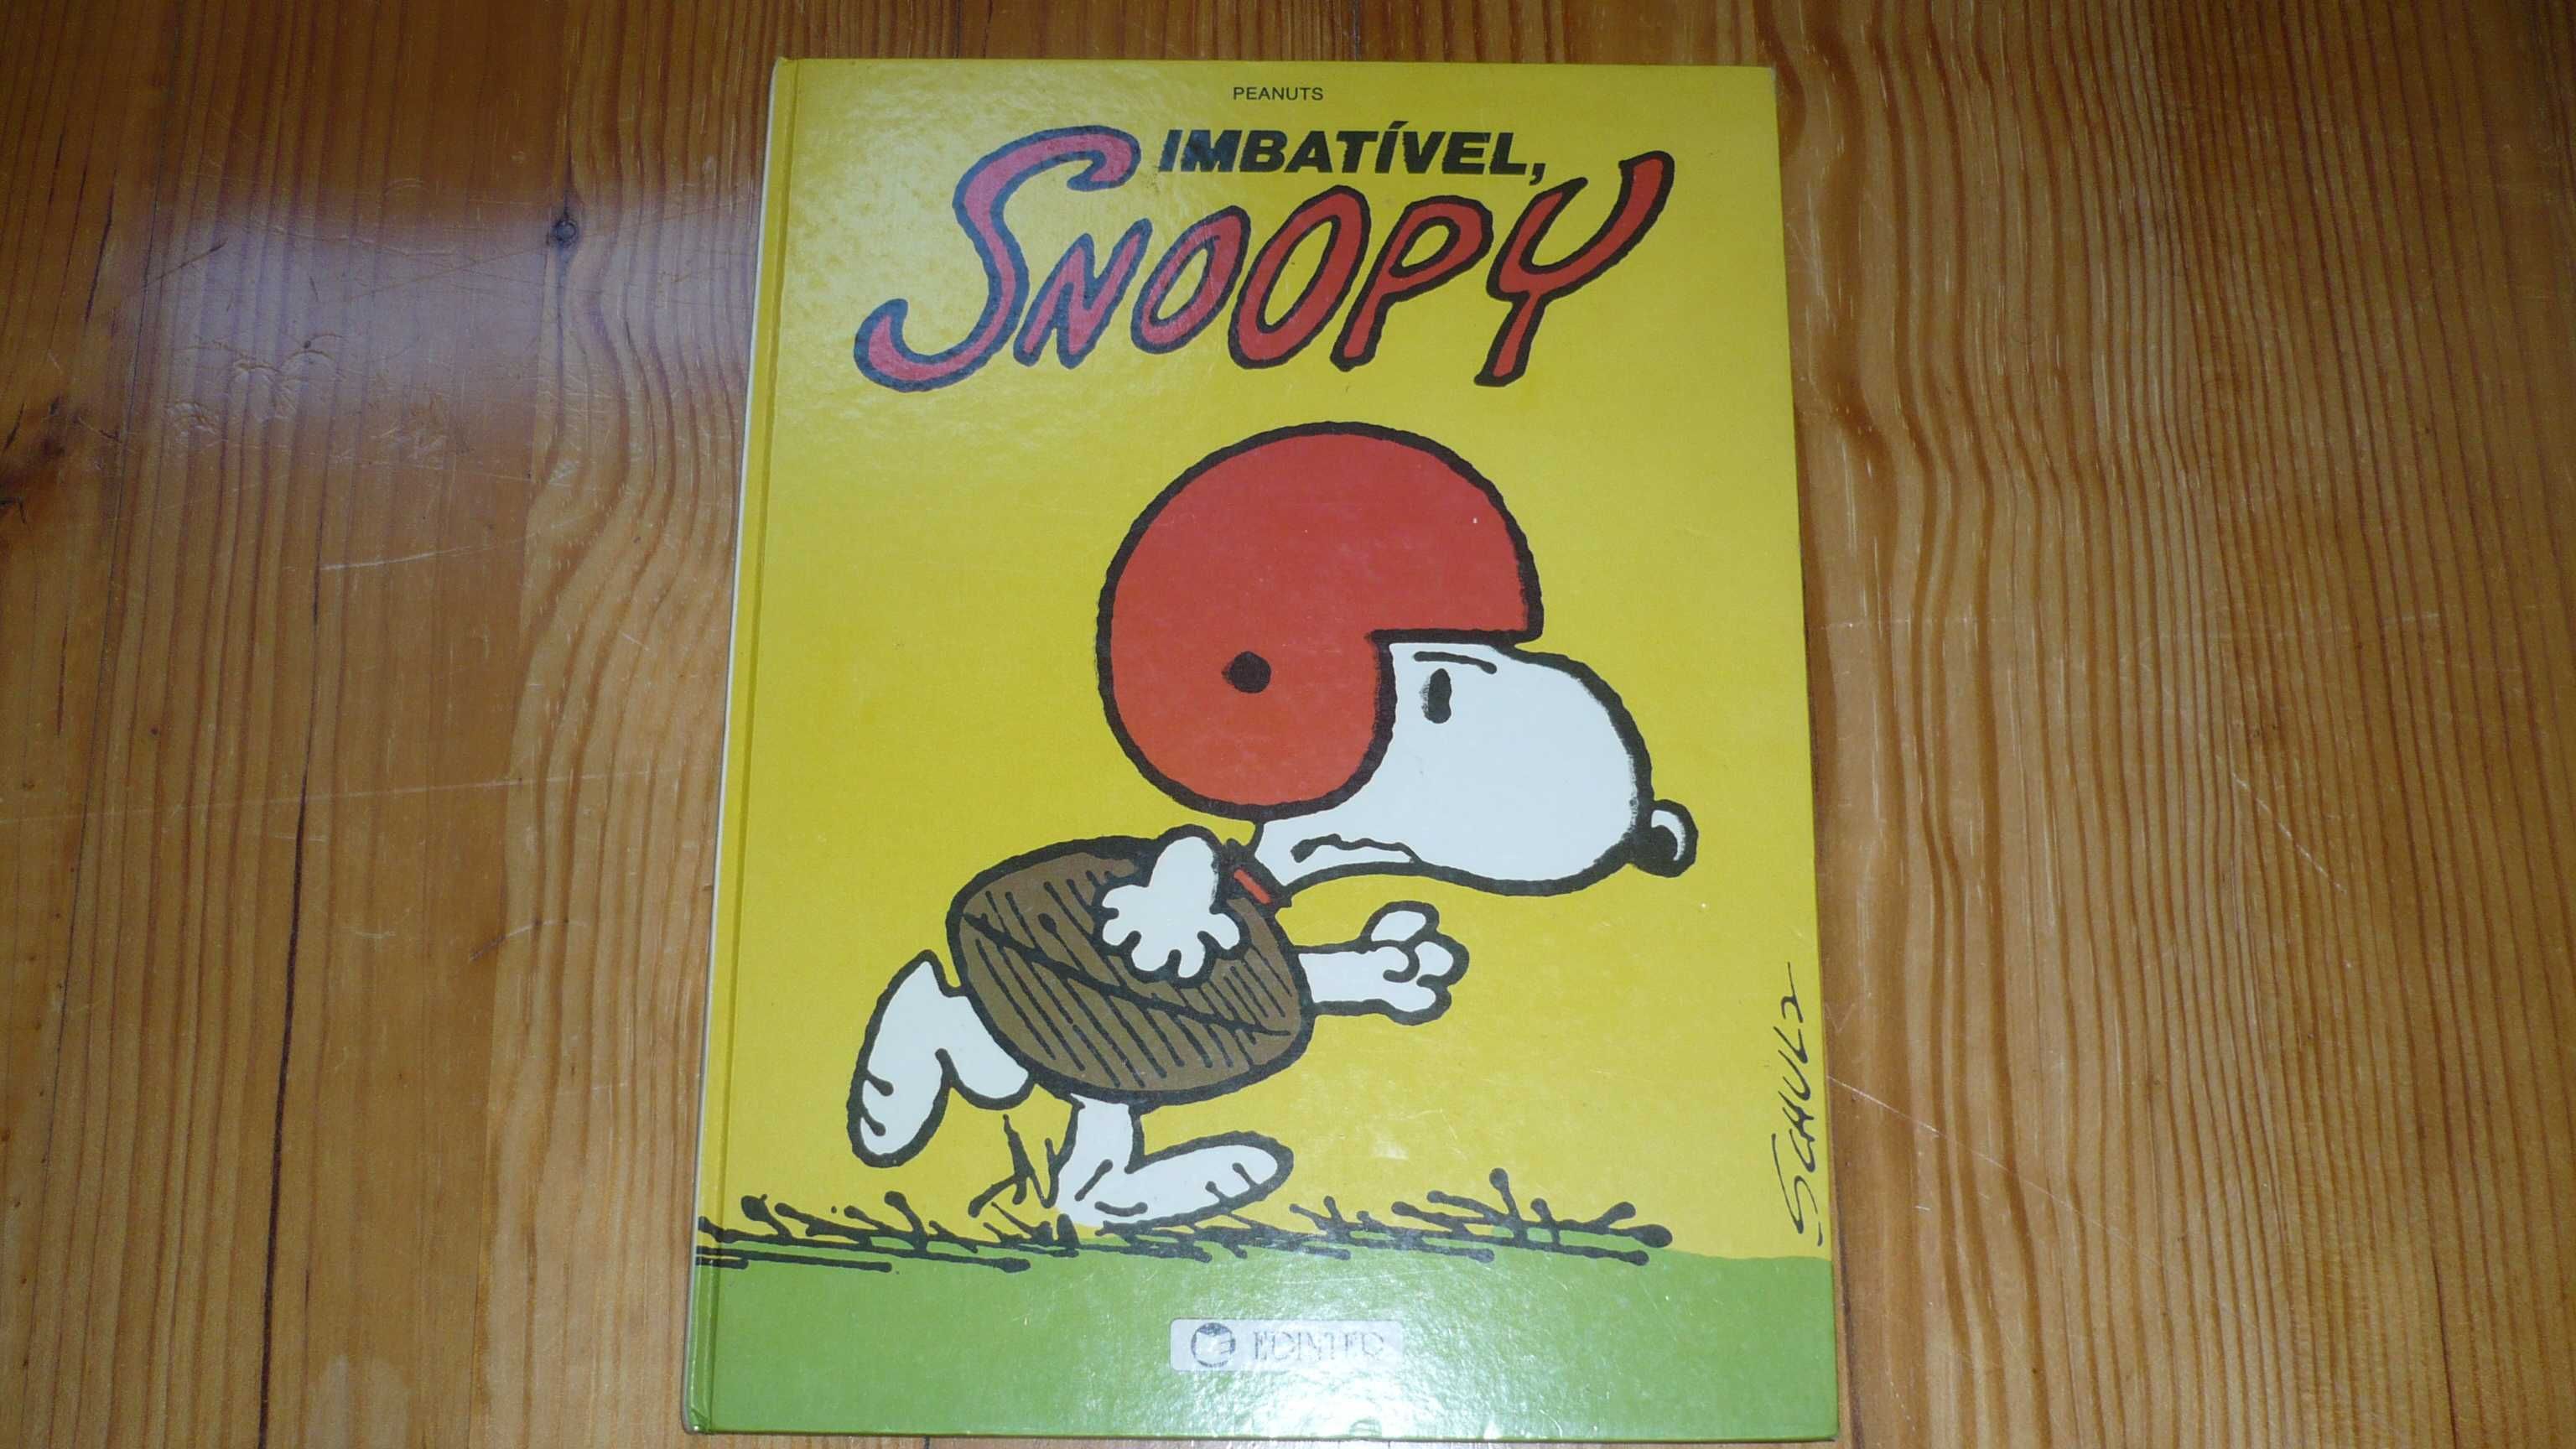 Aventuras dos Estrumpfes + SNOOPY (Peanuts) - Anos 80